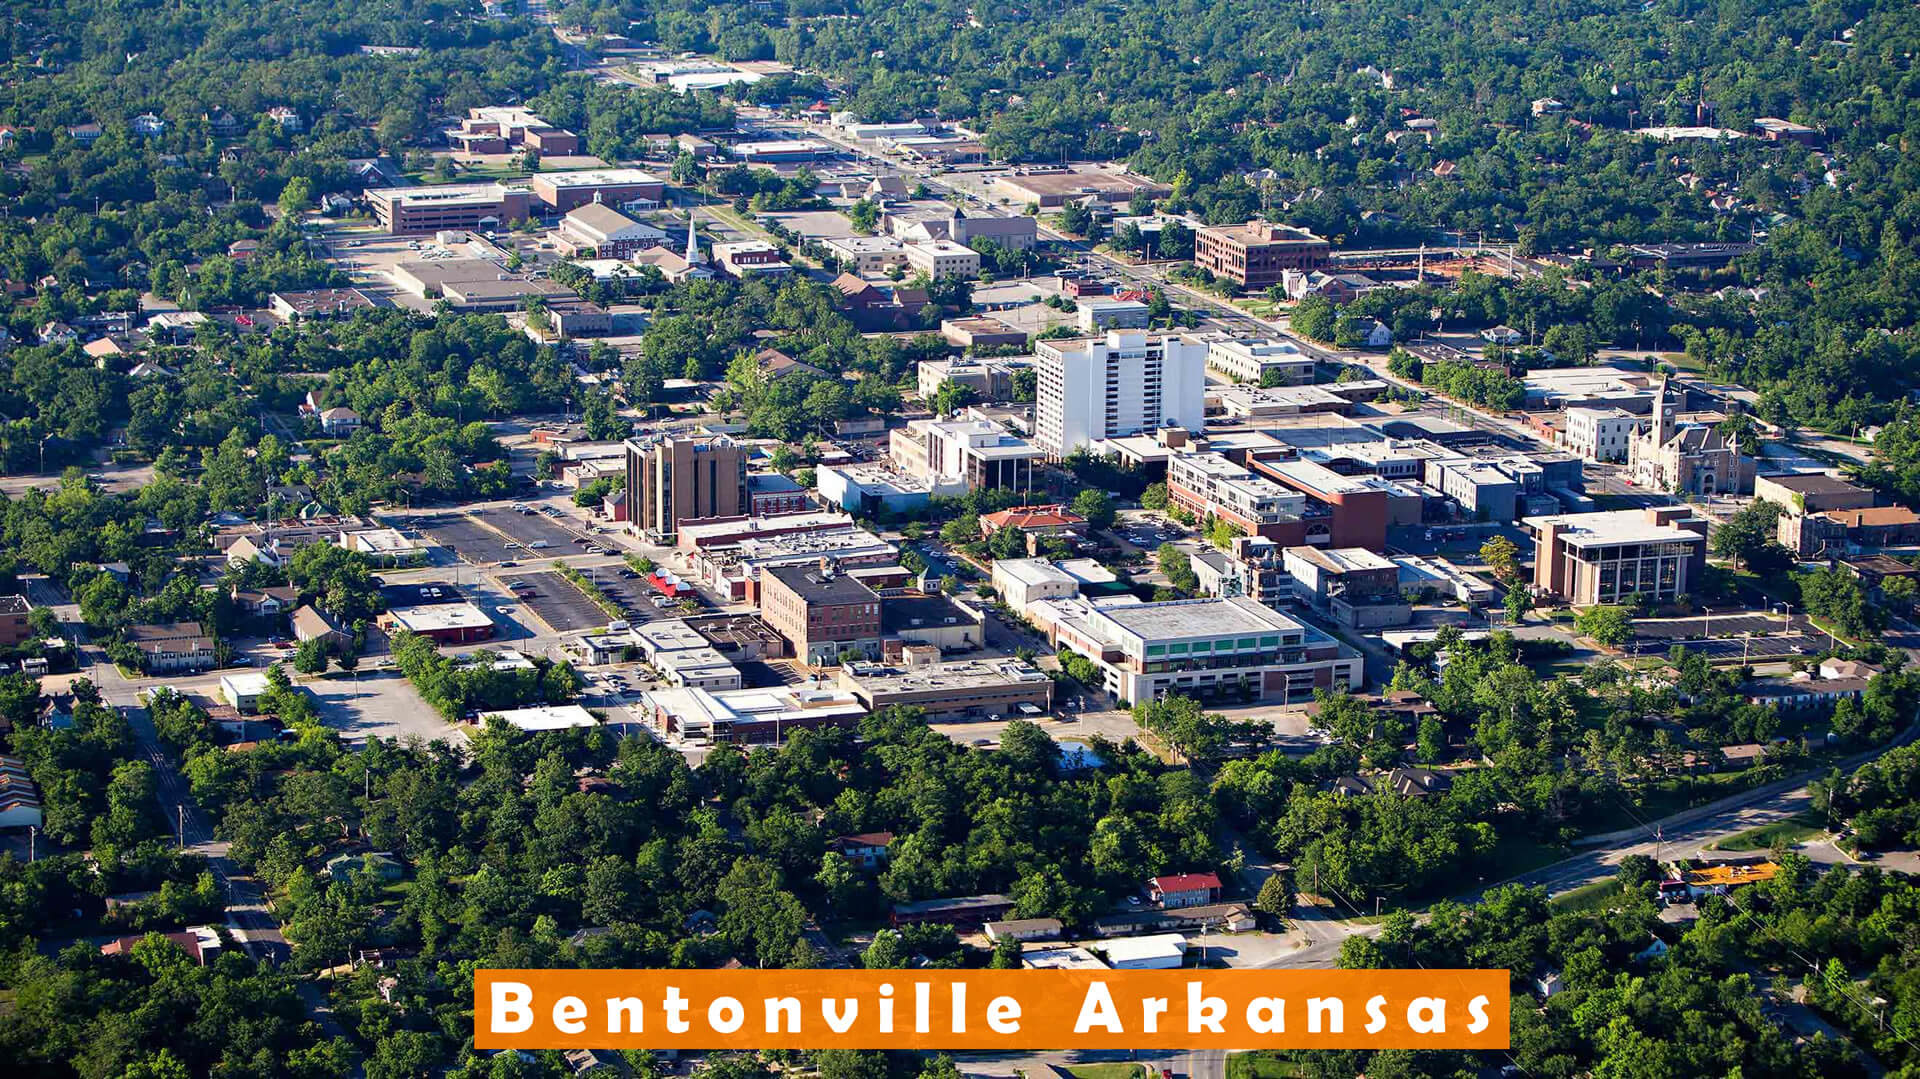 Bentonville Fayetteville Arkansas